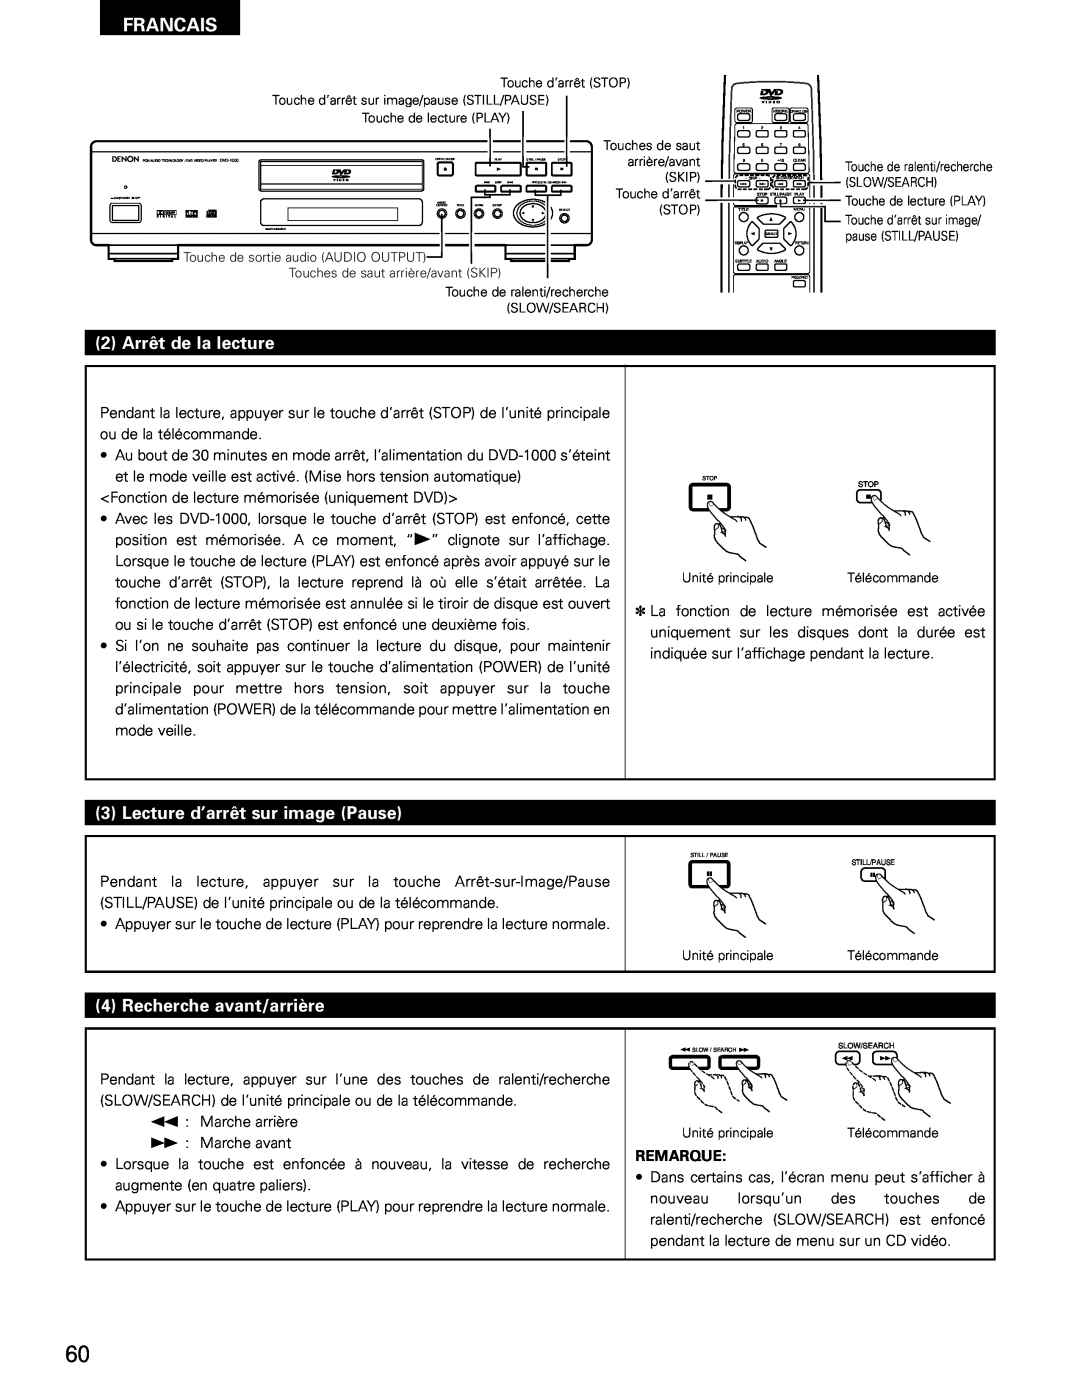 Denon DVD-1000 manual 2 Arrêt de la lecture, Lecture d’arrêt sur image Pause, Recherche avant/arrière, Francais, Remarque 